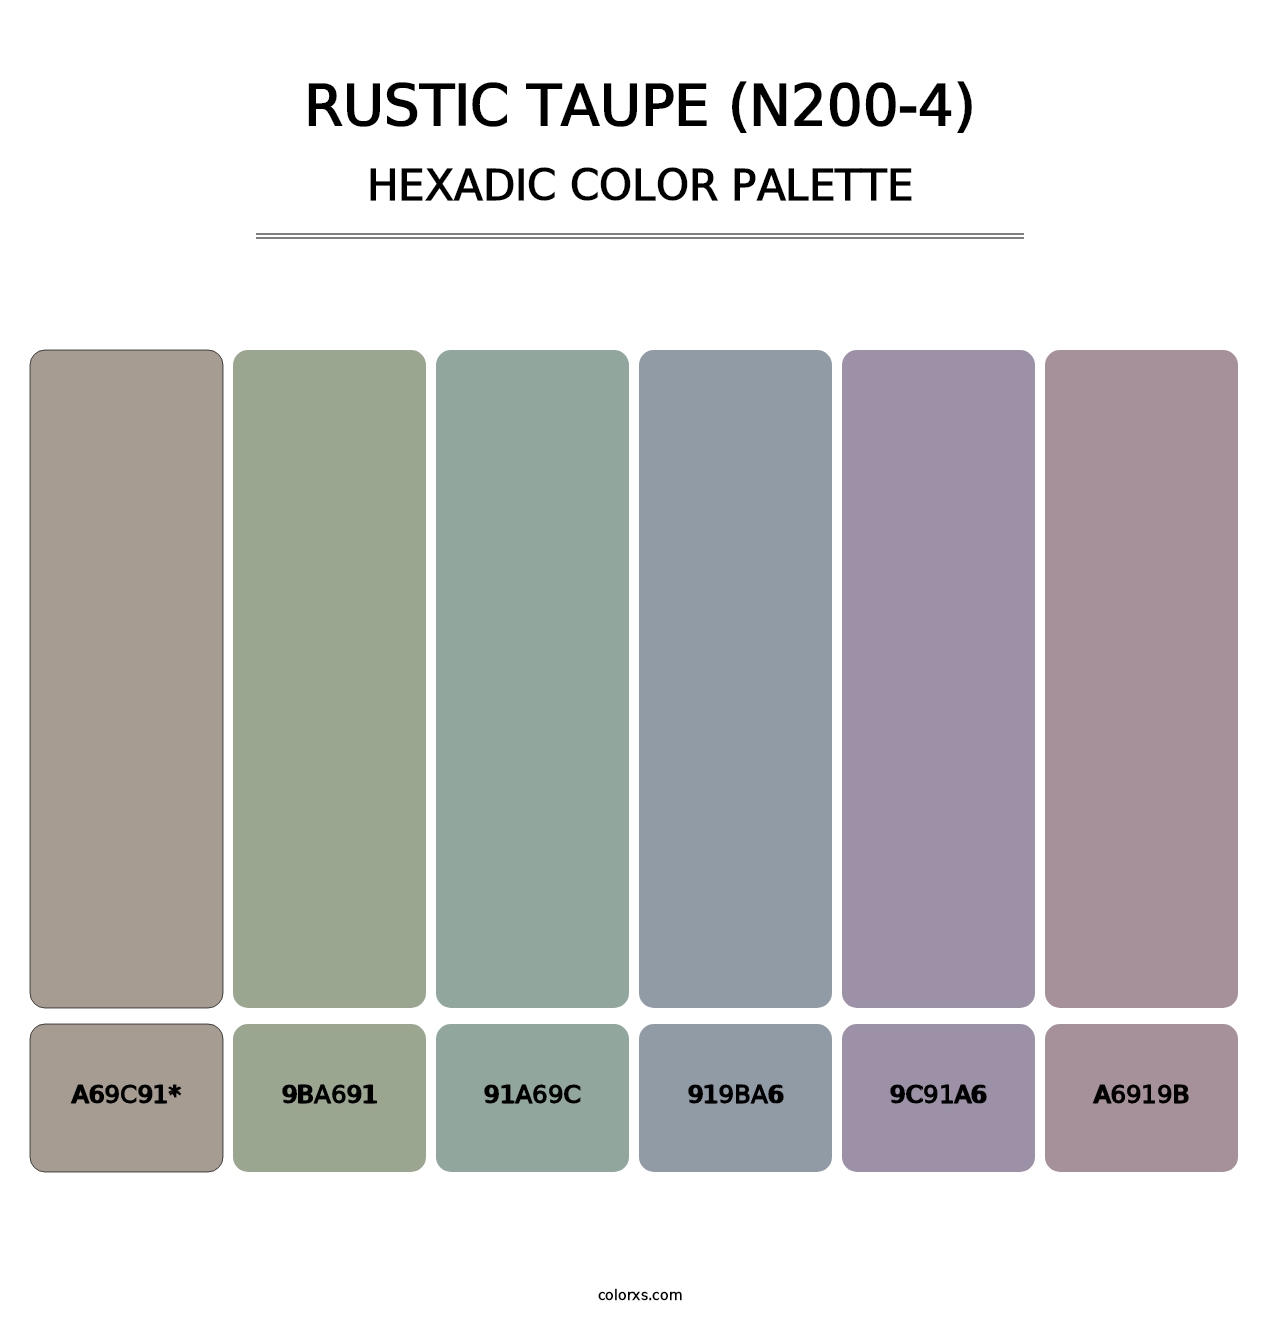 Rustic Taupe (N200-4) - Hexadic Color Palette